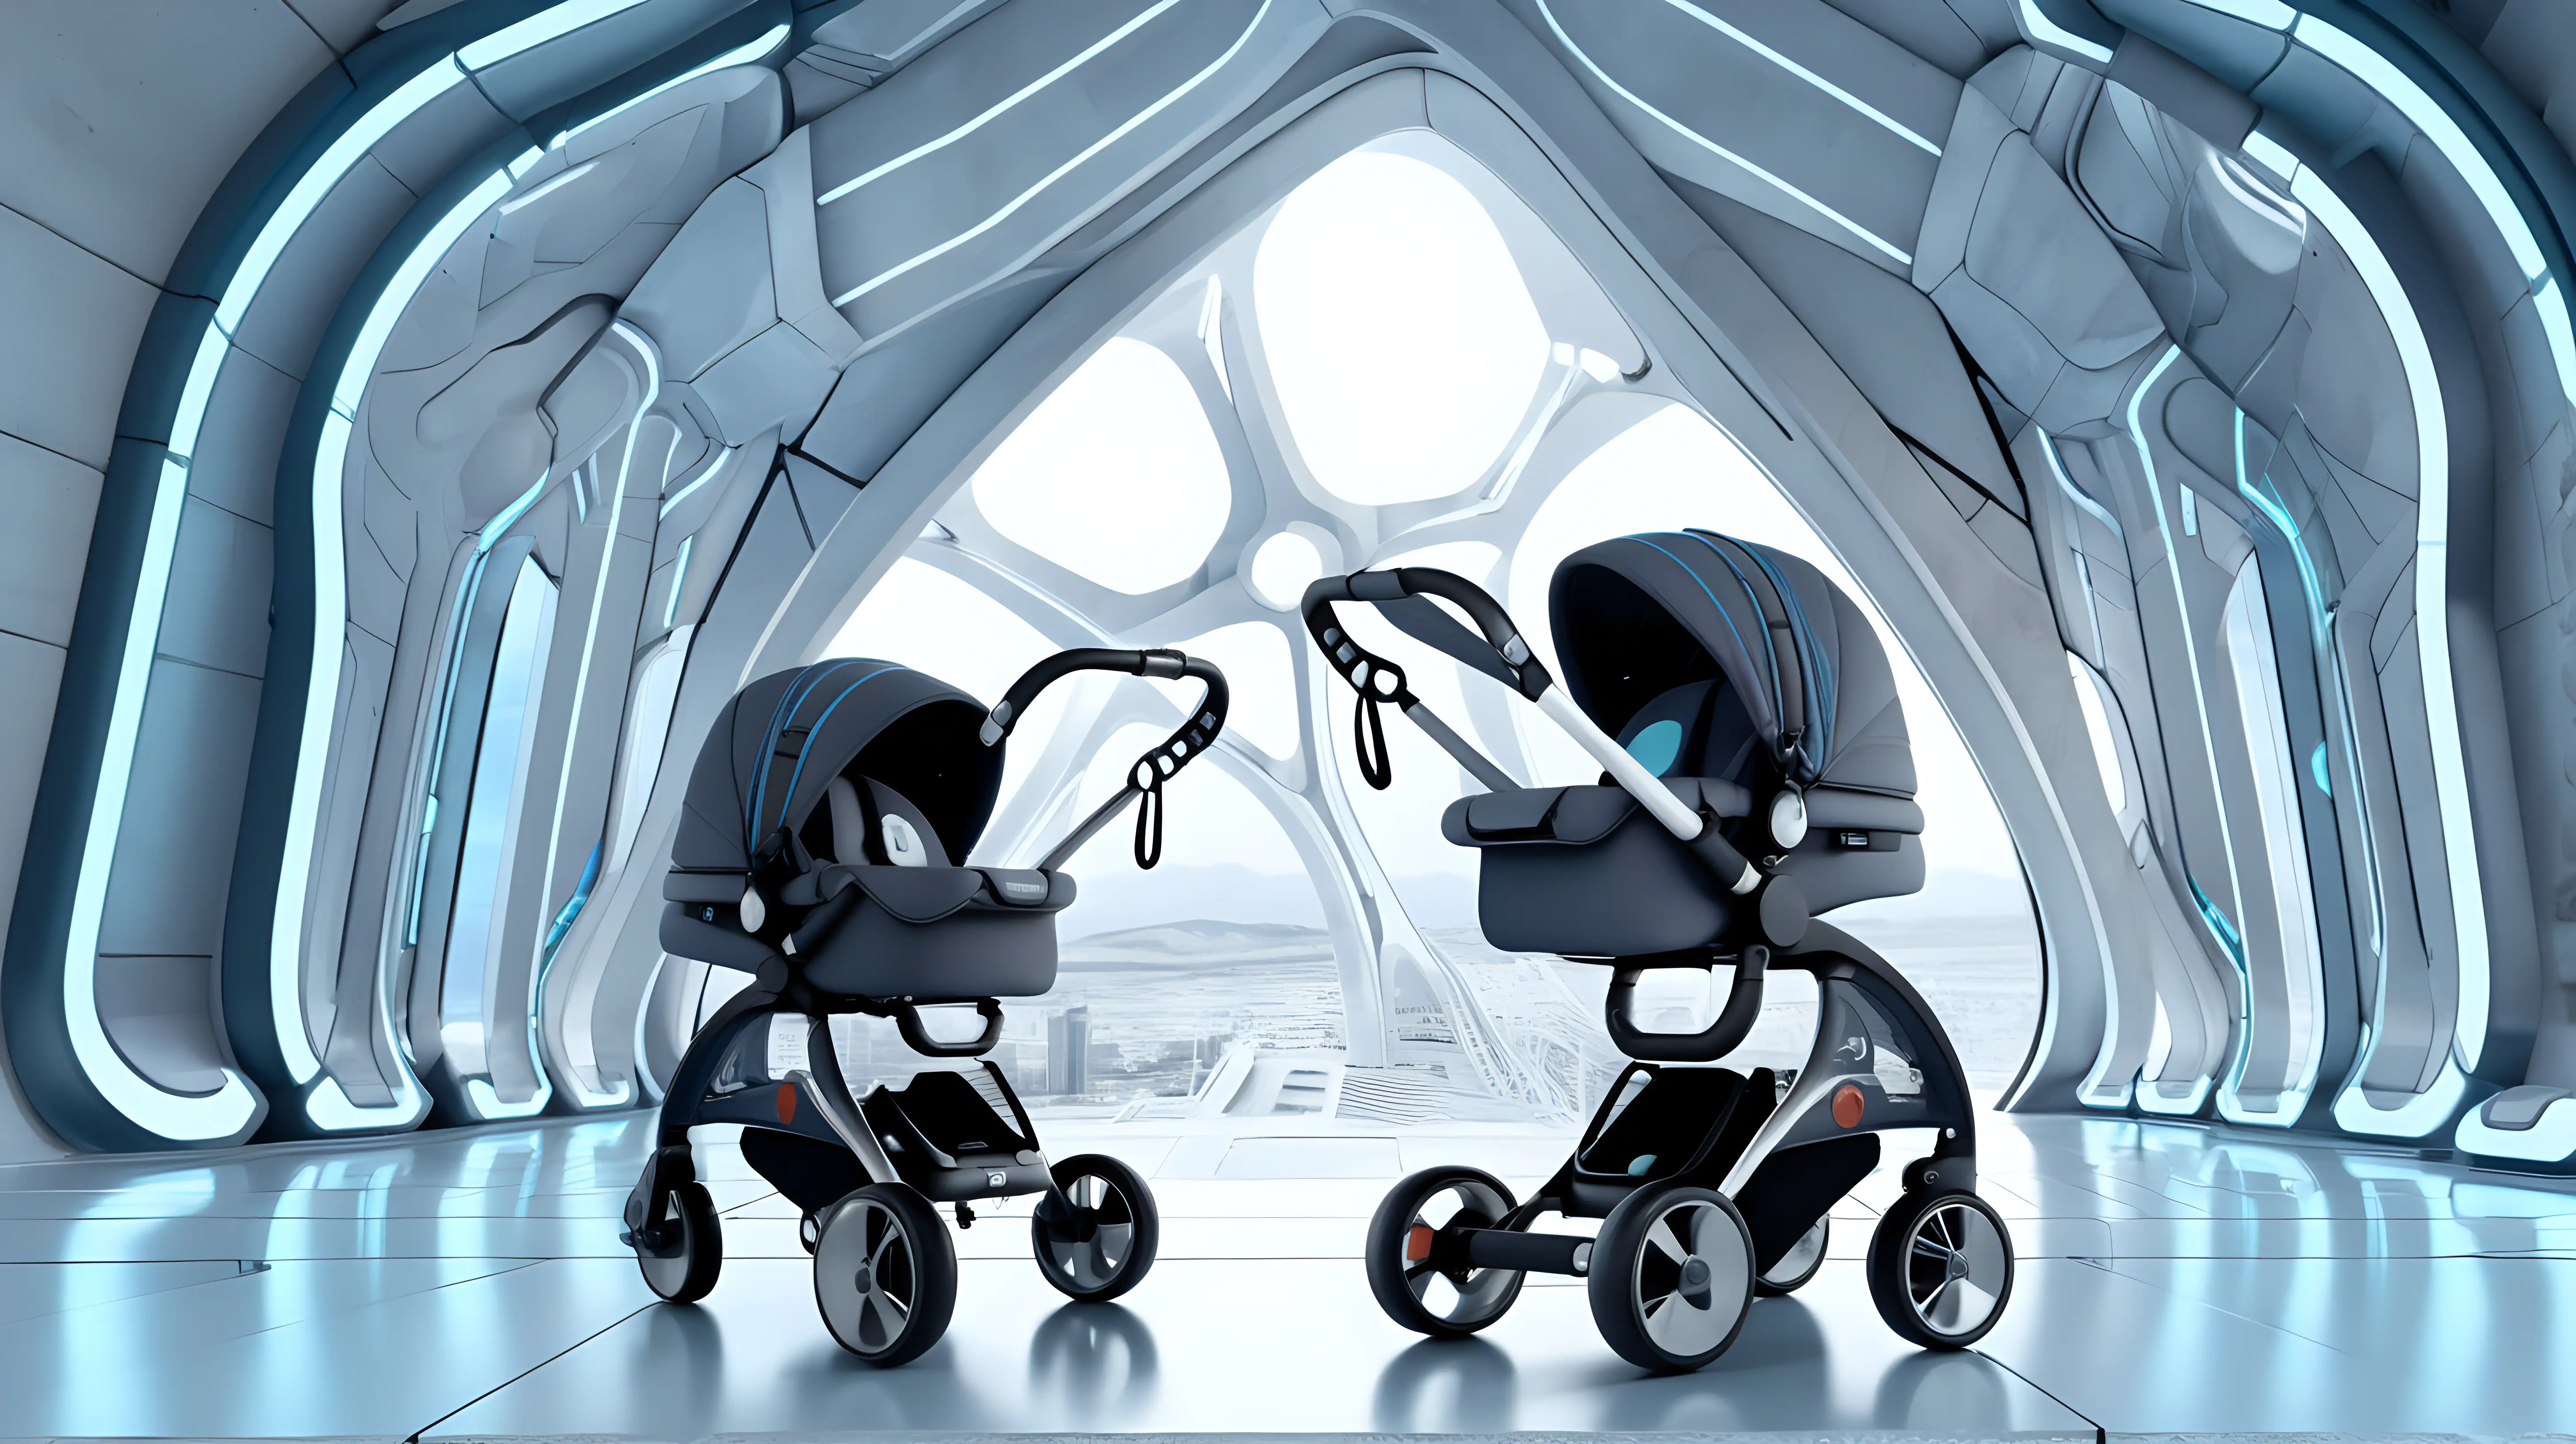 futuristic stroller set in a futuristic architectural background